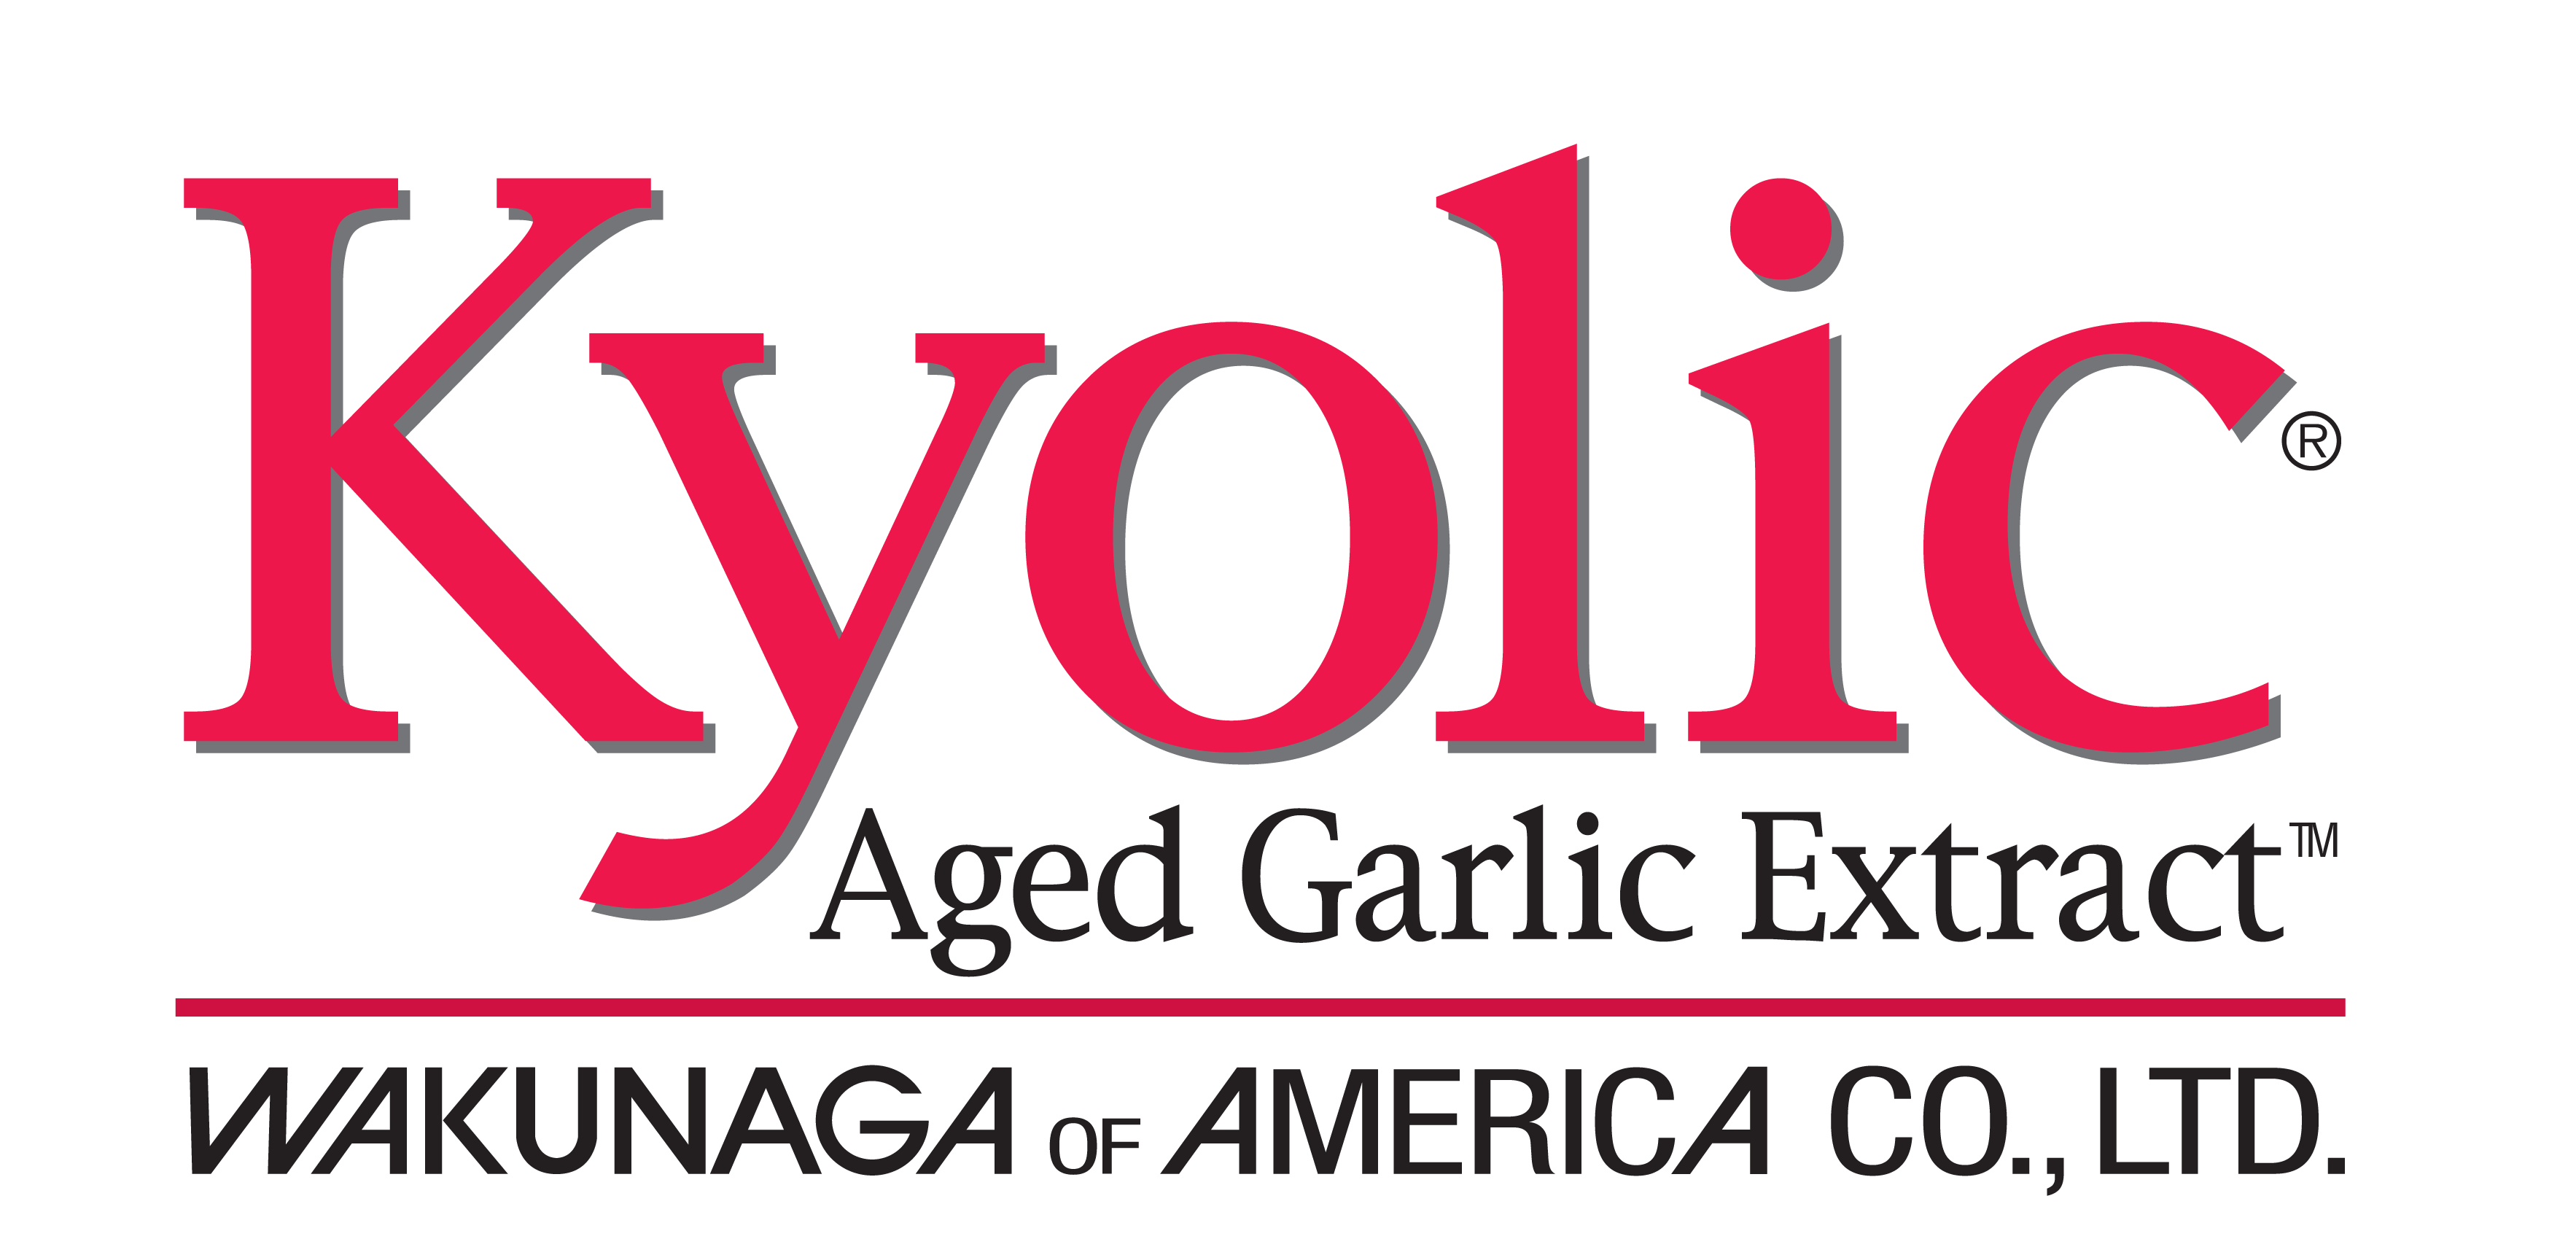 Kyolic Logo